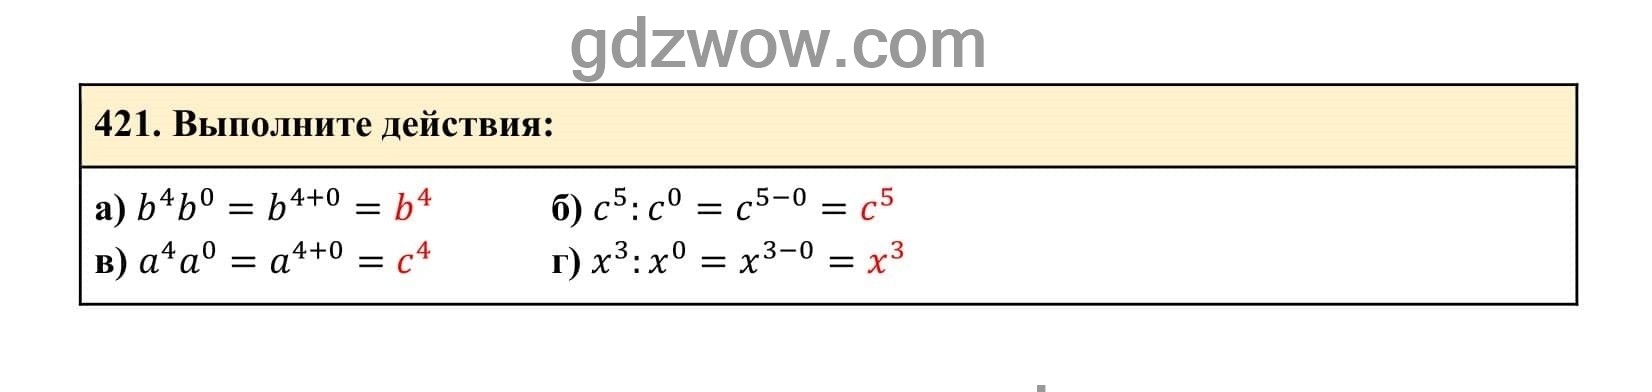 Упражнение 421 - ГДЗ по Алгебре 7 класс Учебник Макарычев (решебник) - GDZwow